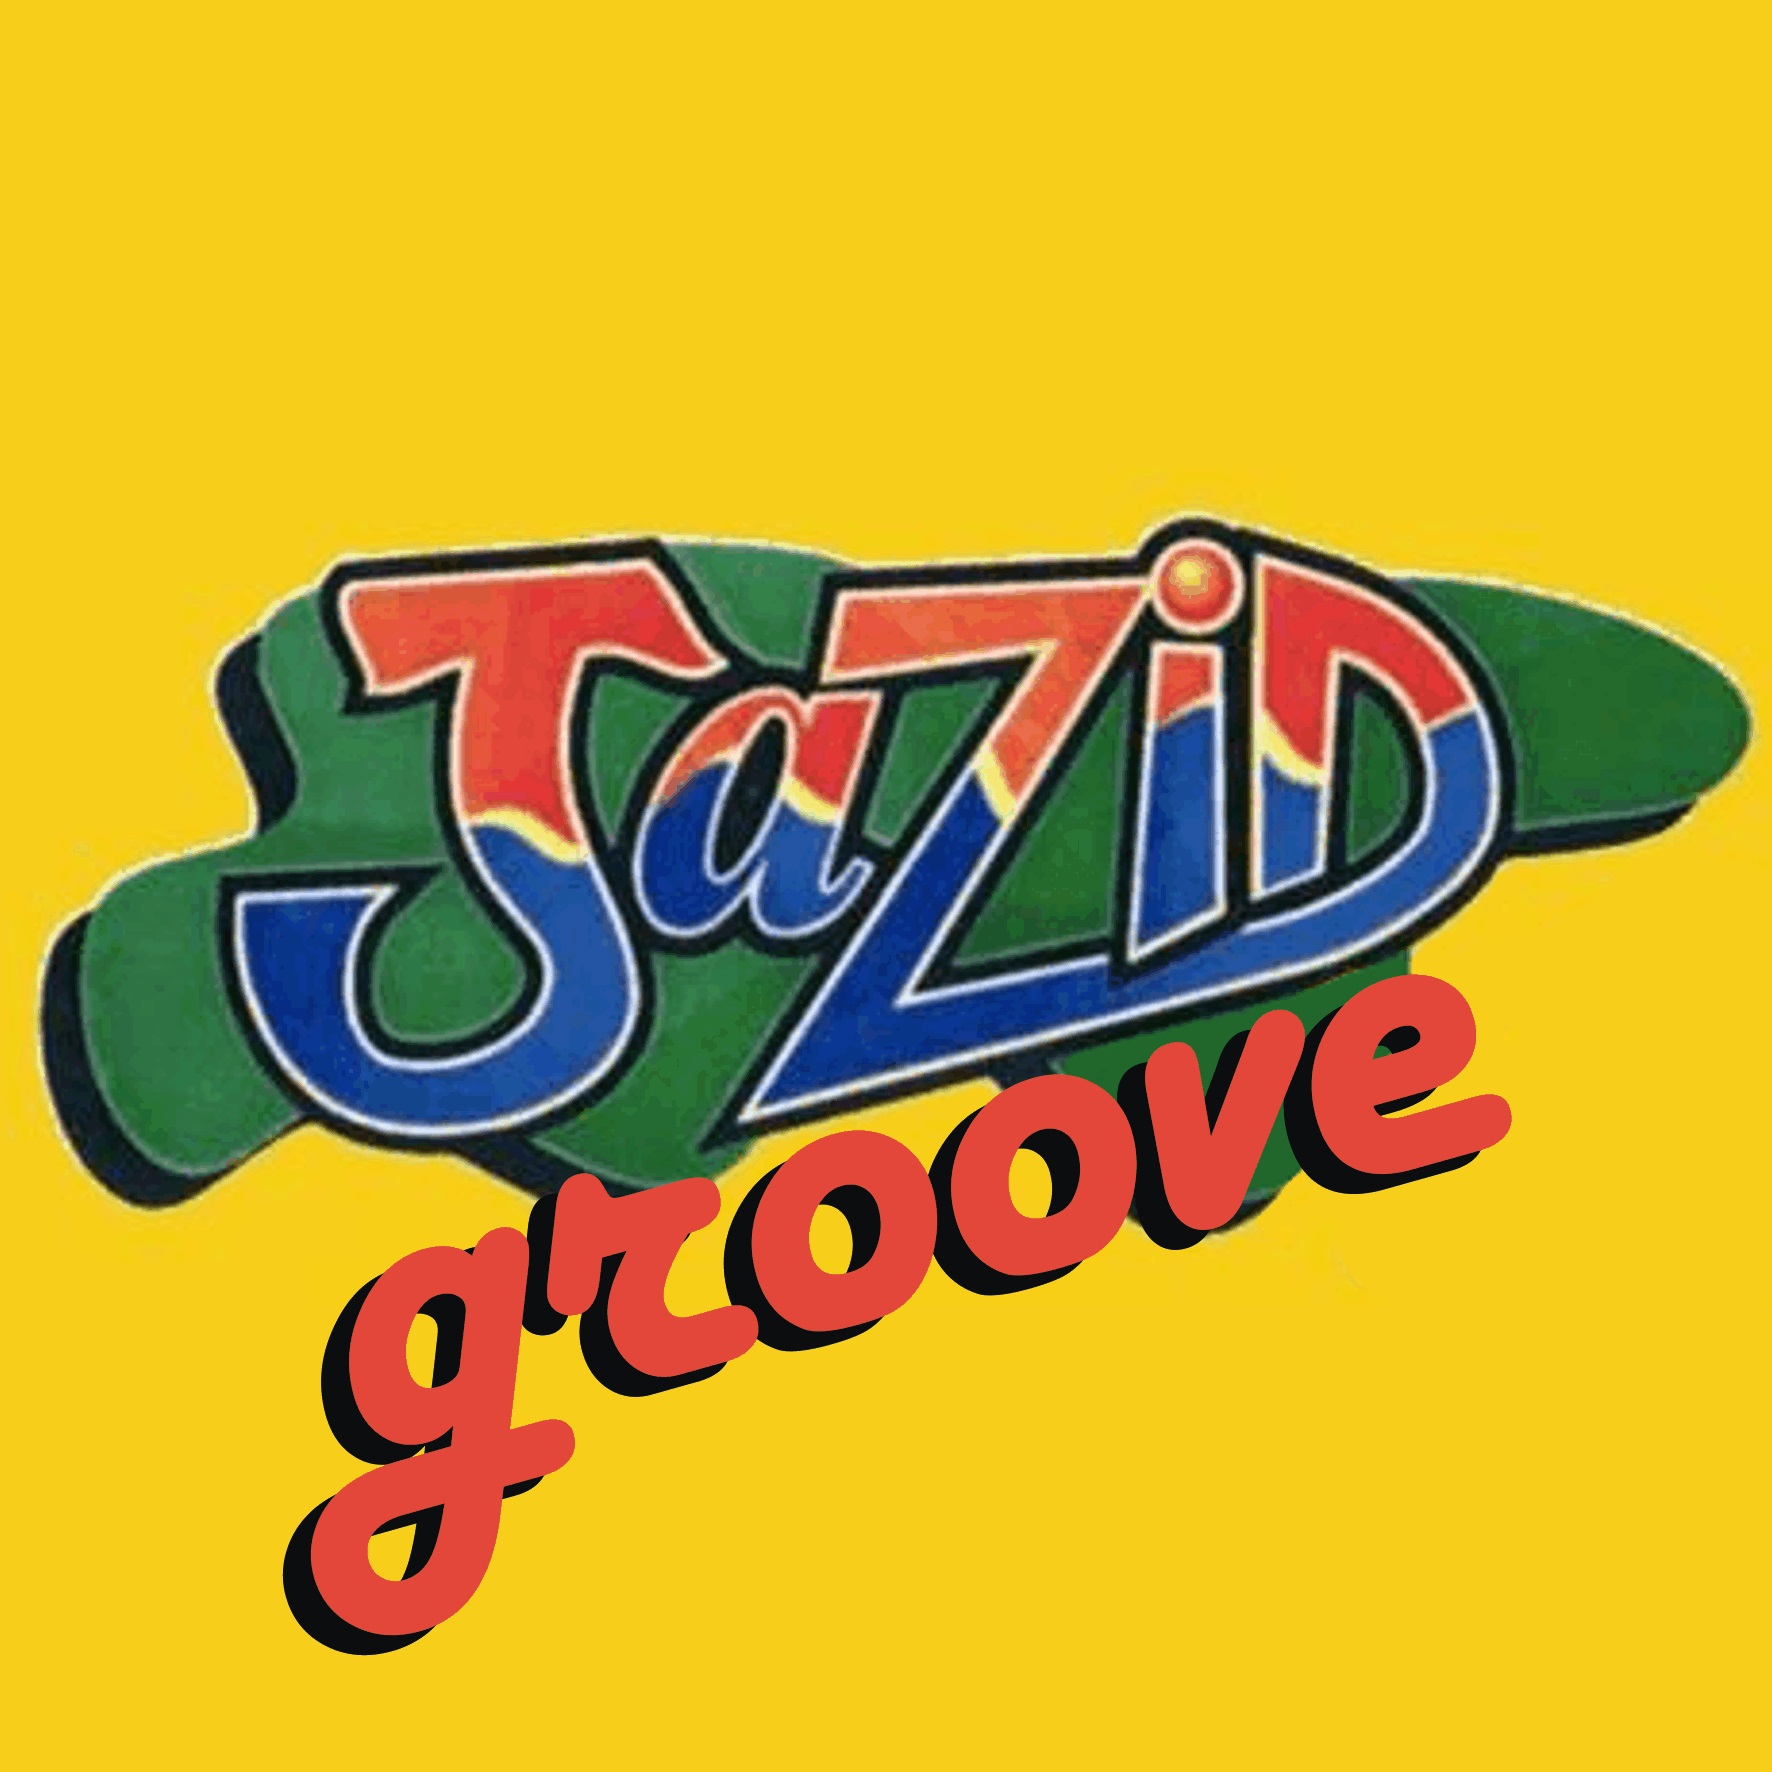 Jazid Groove 69